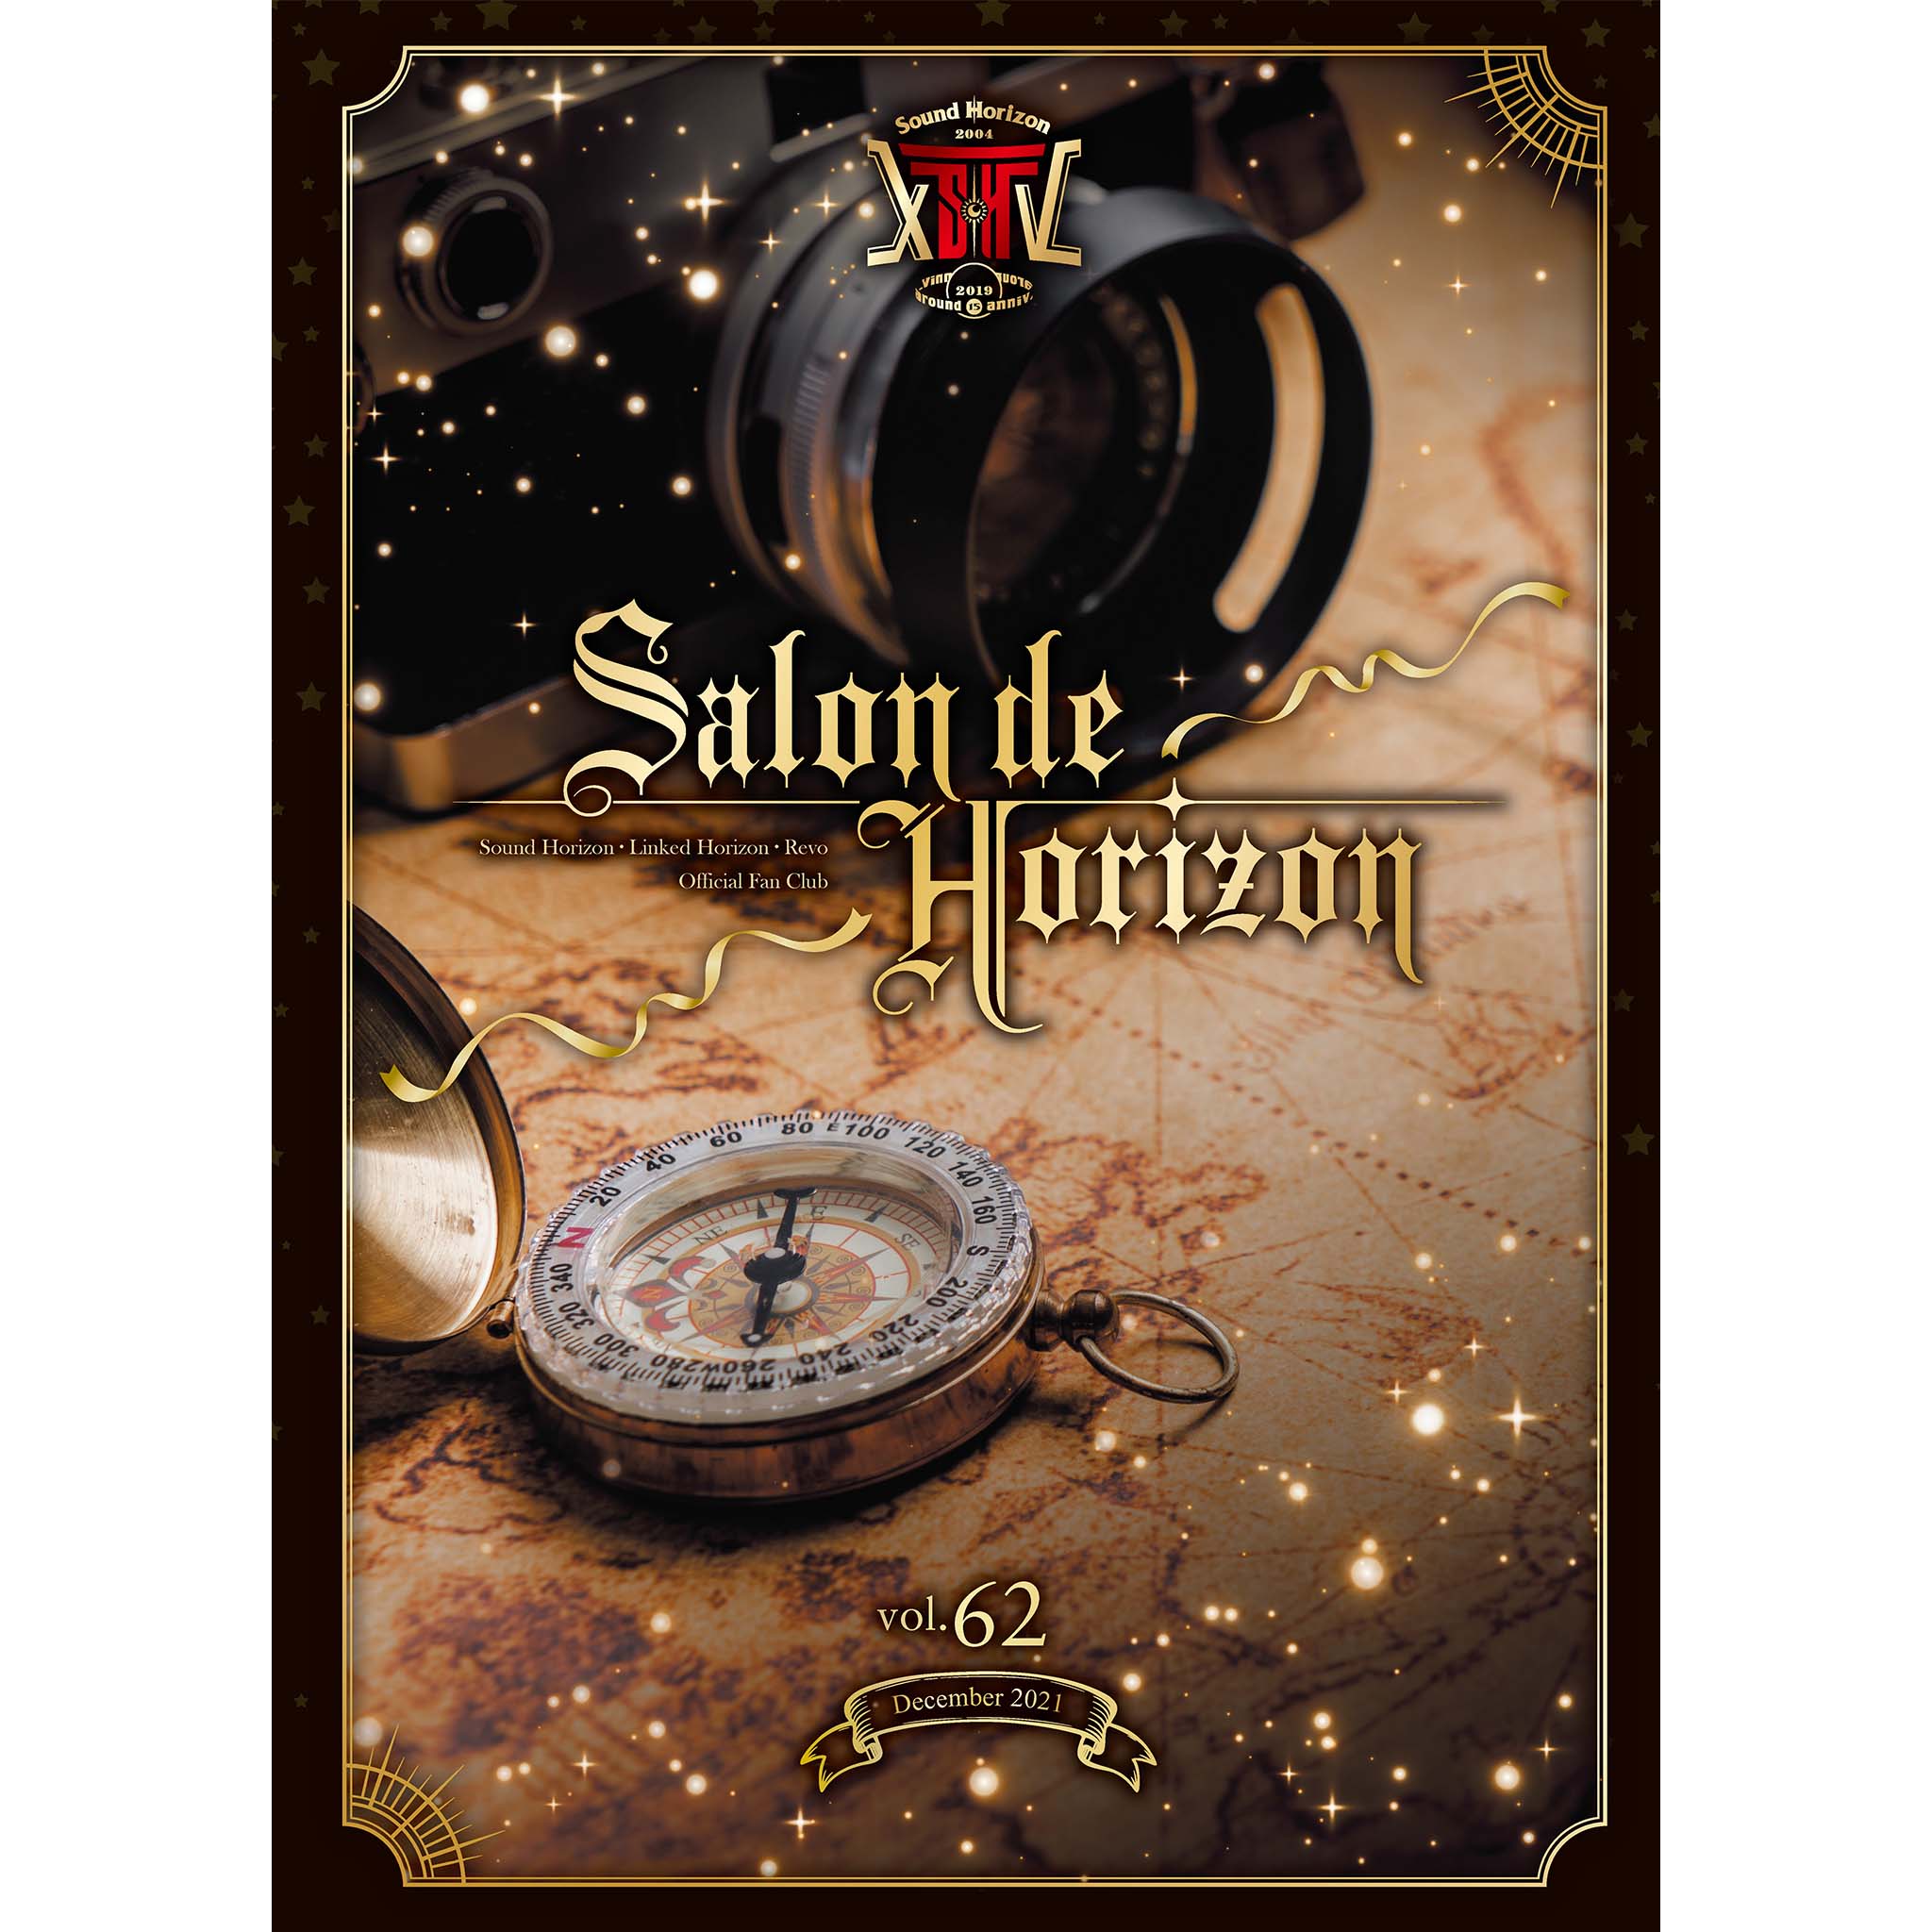 サウンド・ホライズン　Sound Horizon FC会報誌 Salon de Horizon Vol.36/42〜46/49〜52/57〜60・61＋祝賀祭　パンフの15冊セット